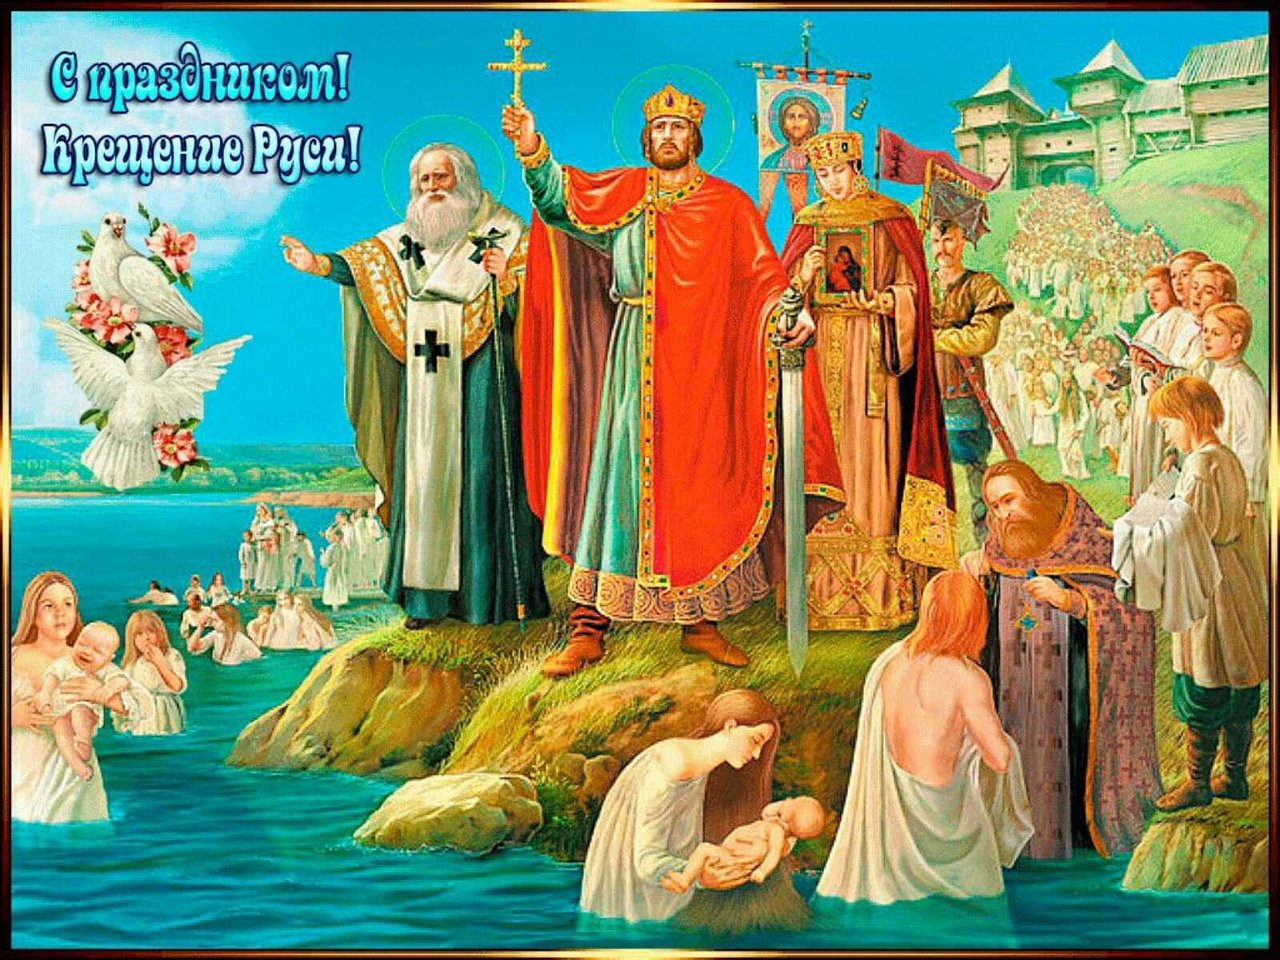 Крещение Руси 28 июля 988